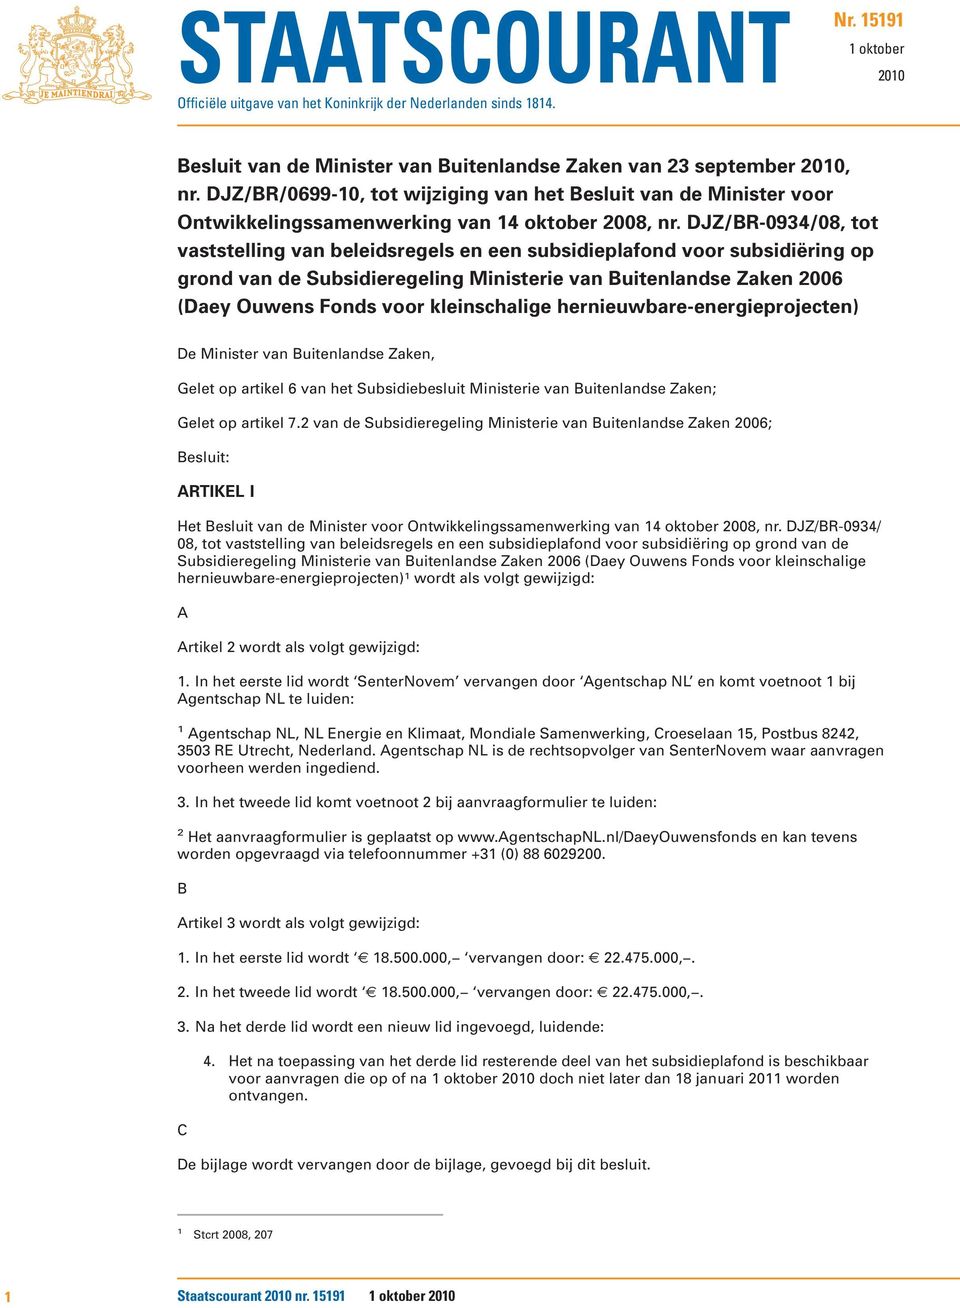 DJZ/BR-0934/08, tot vaststelling van beleidsregels en een subsidieplafond voor subsidiëring op grond van de Subsidieregeling Ministerie van Buitenlandse Zaken 2006 (Daey Ouwens Fonds voor